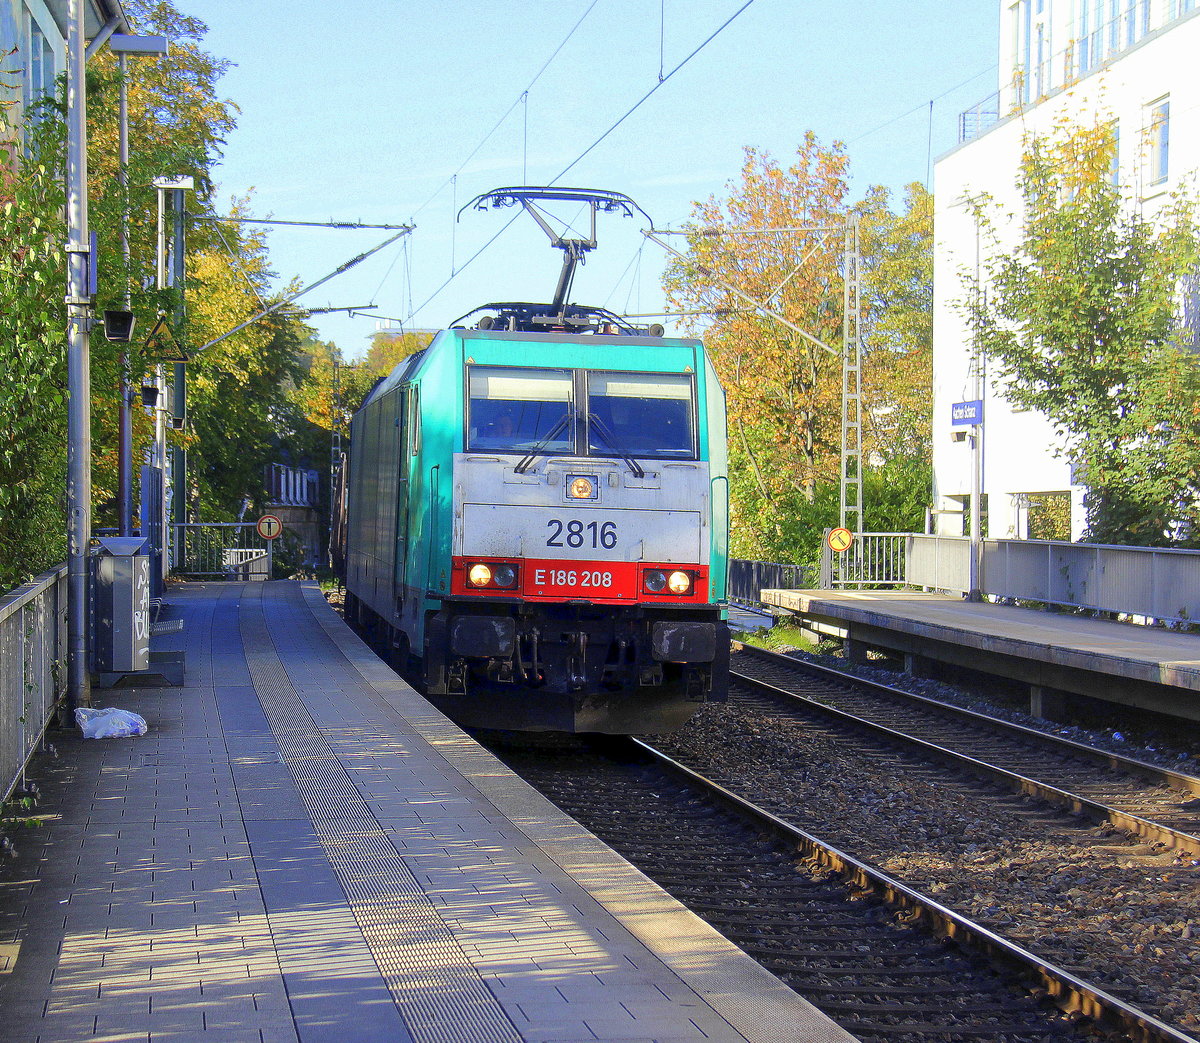 Die Cobra 2816 kommt aus Richtung Aachen-West mit gemischten Güterzug aus Antwerpen-Noord(B) nach Köln-Gremberg(D) und fährt durch Aachen-Schanz in Richtung Aachen-Hbf,Aachen-Rothe-Erde,Stolberg-Hbf(Rheinland)Eschweiler-Hbf,Langerwehe,Düren,Merzenich,Buir,Horrem,Kerpen-Köln-Ehrenfeld,Köln-West,Köln-Süd. Aufgenommen vom Bahnsteig von Aachen-Schanz. 
Bei Sommerwetter am Nachmittag vom 5.10.2018.